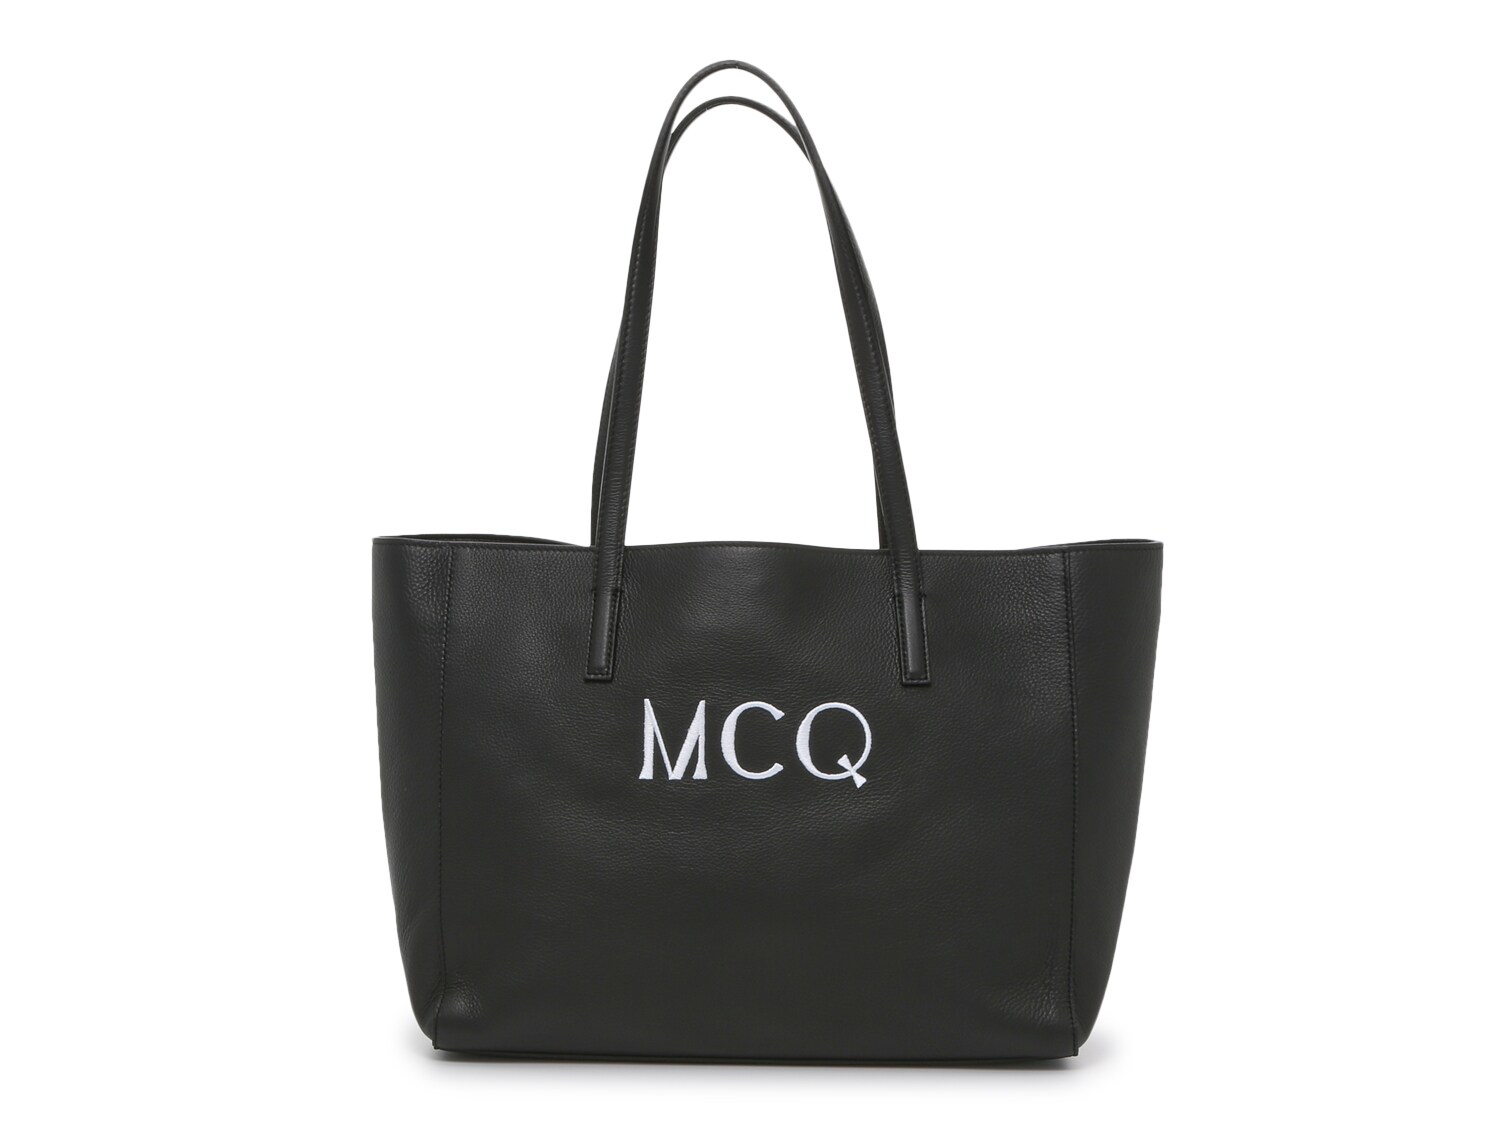 Сумка-тоут Alexander McQueen с логотипом MCQ, черный